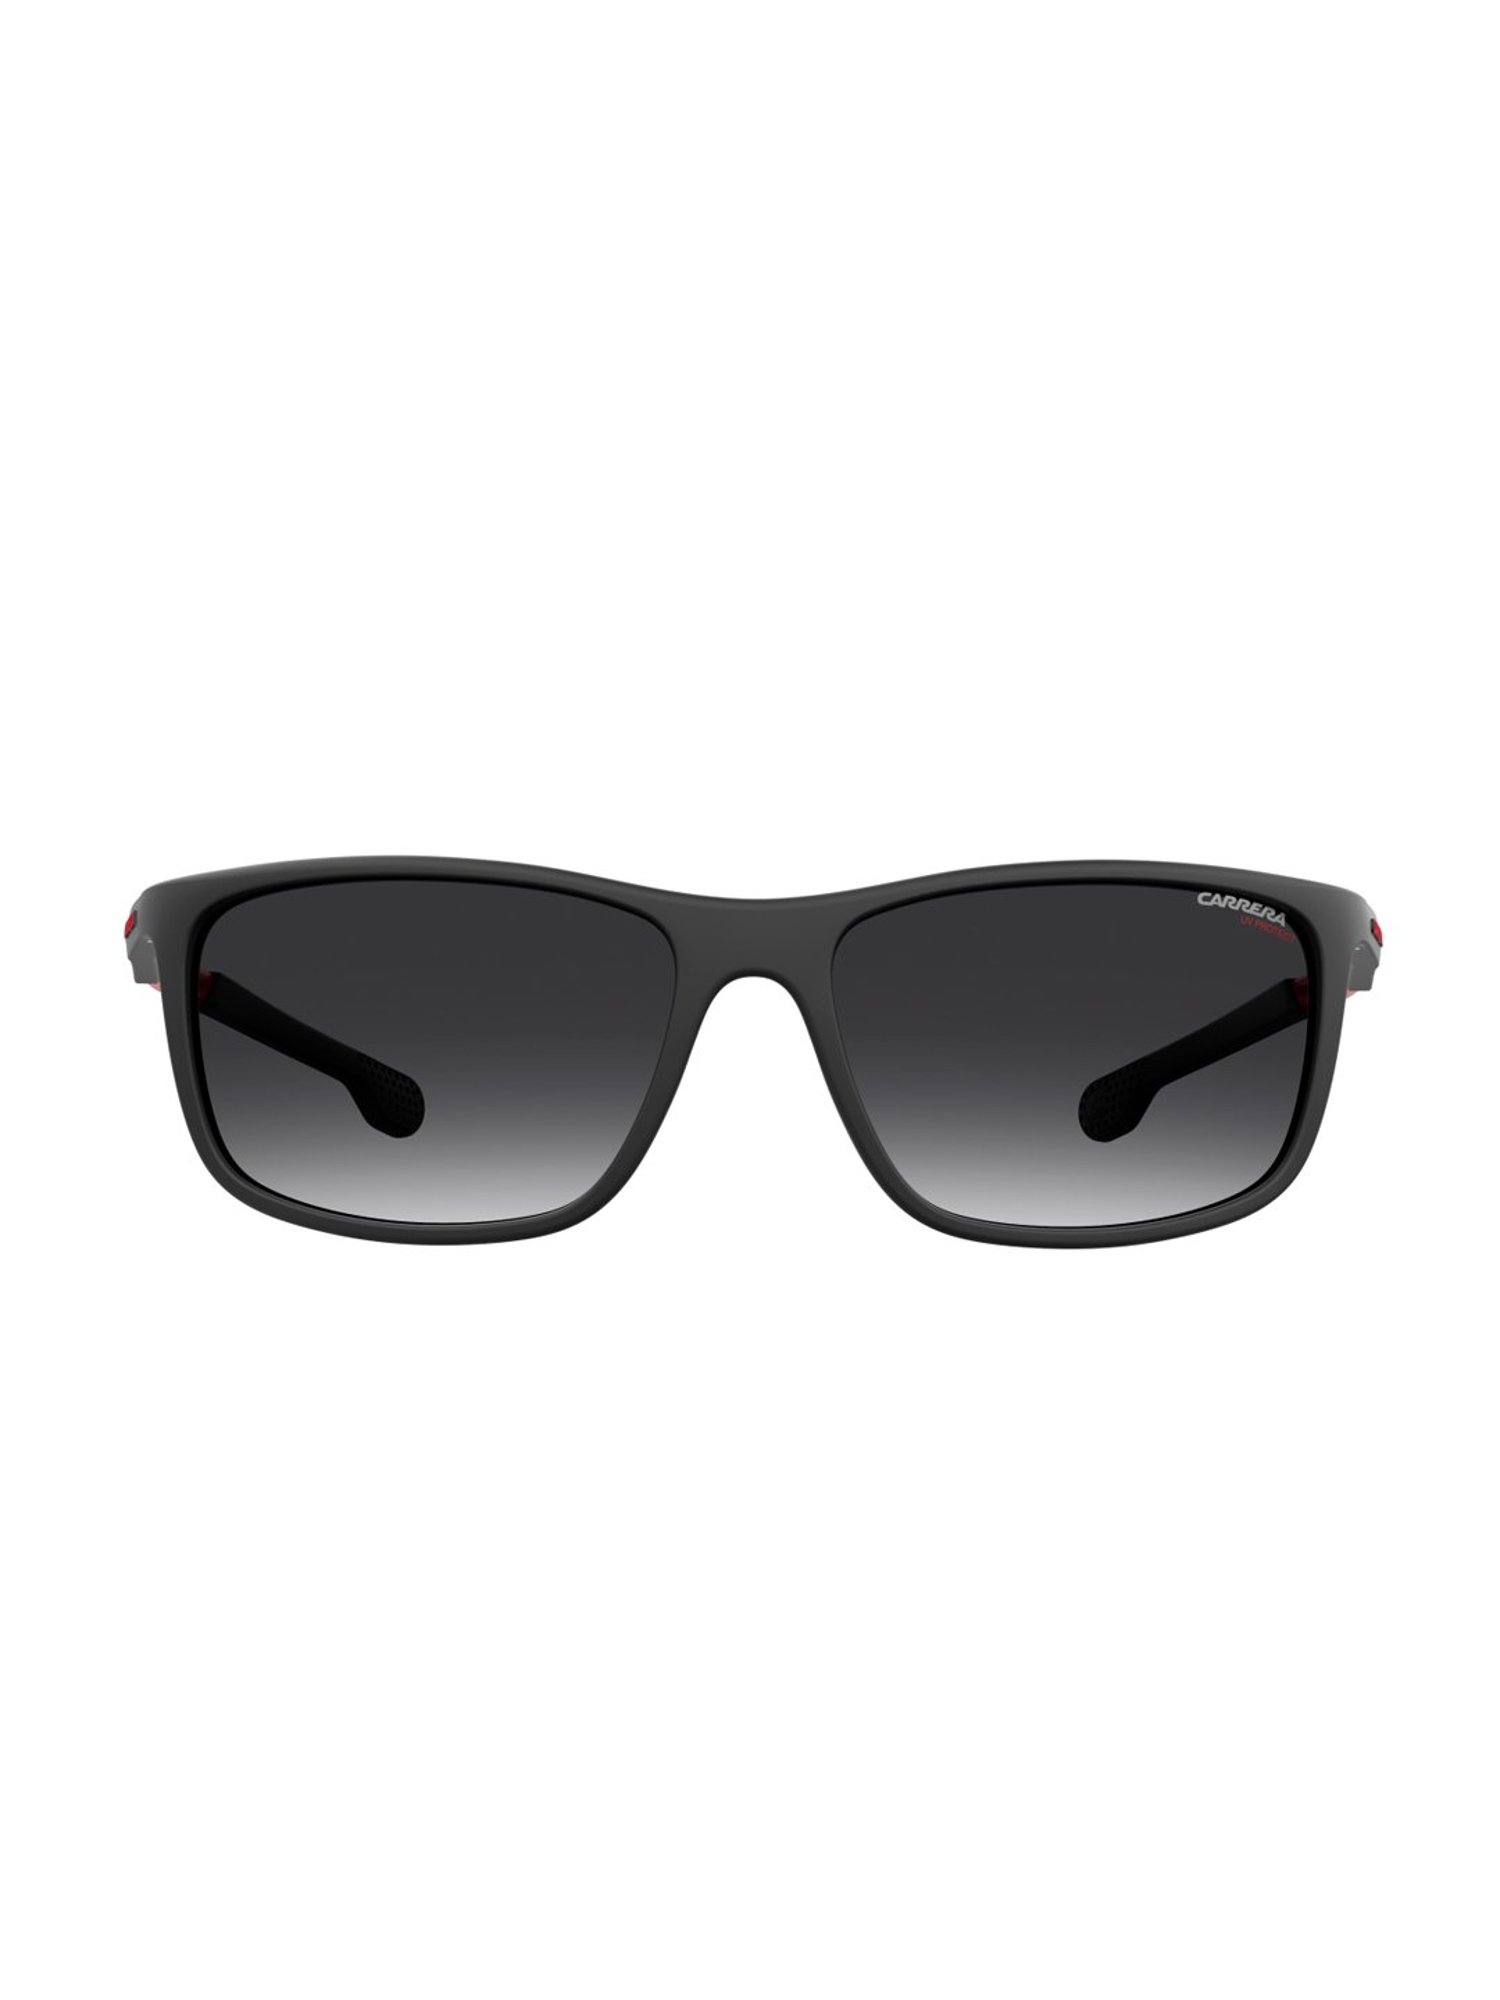 Amazon.com: Carrera Navigator Sunglasses 33/S R6S9O Transparent Gray/Black  62mm : Sports & Outdoors